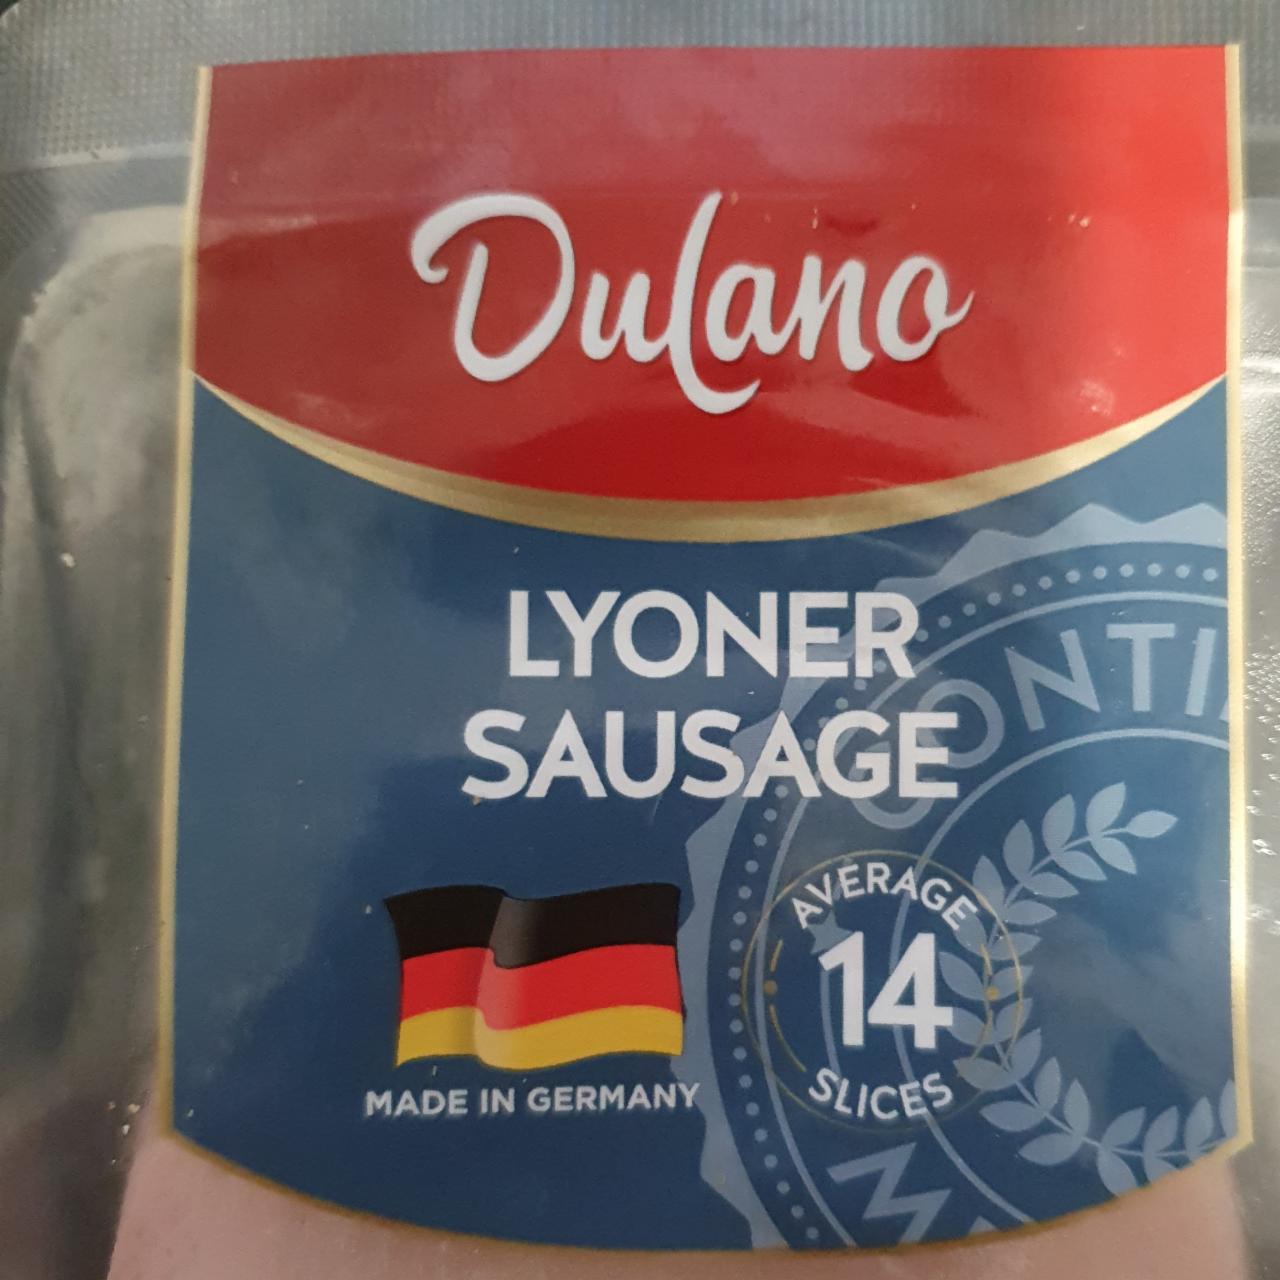 Lyoner sausage Dulano - kalorie, hodnoty nutriční a kJ